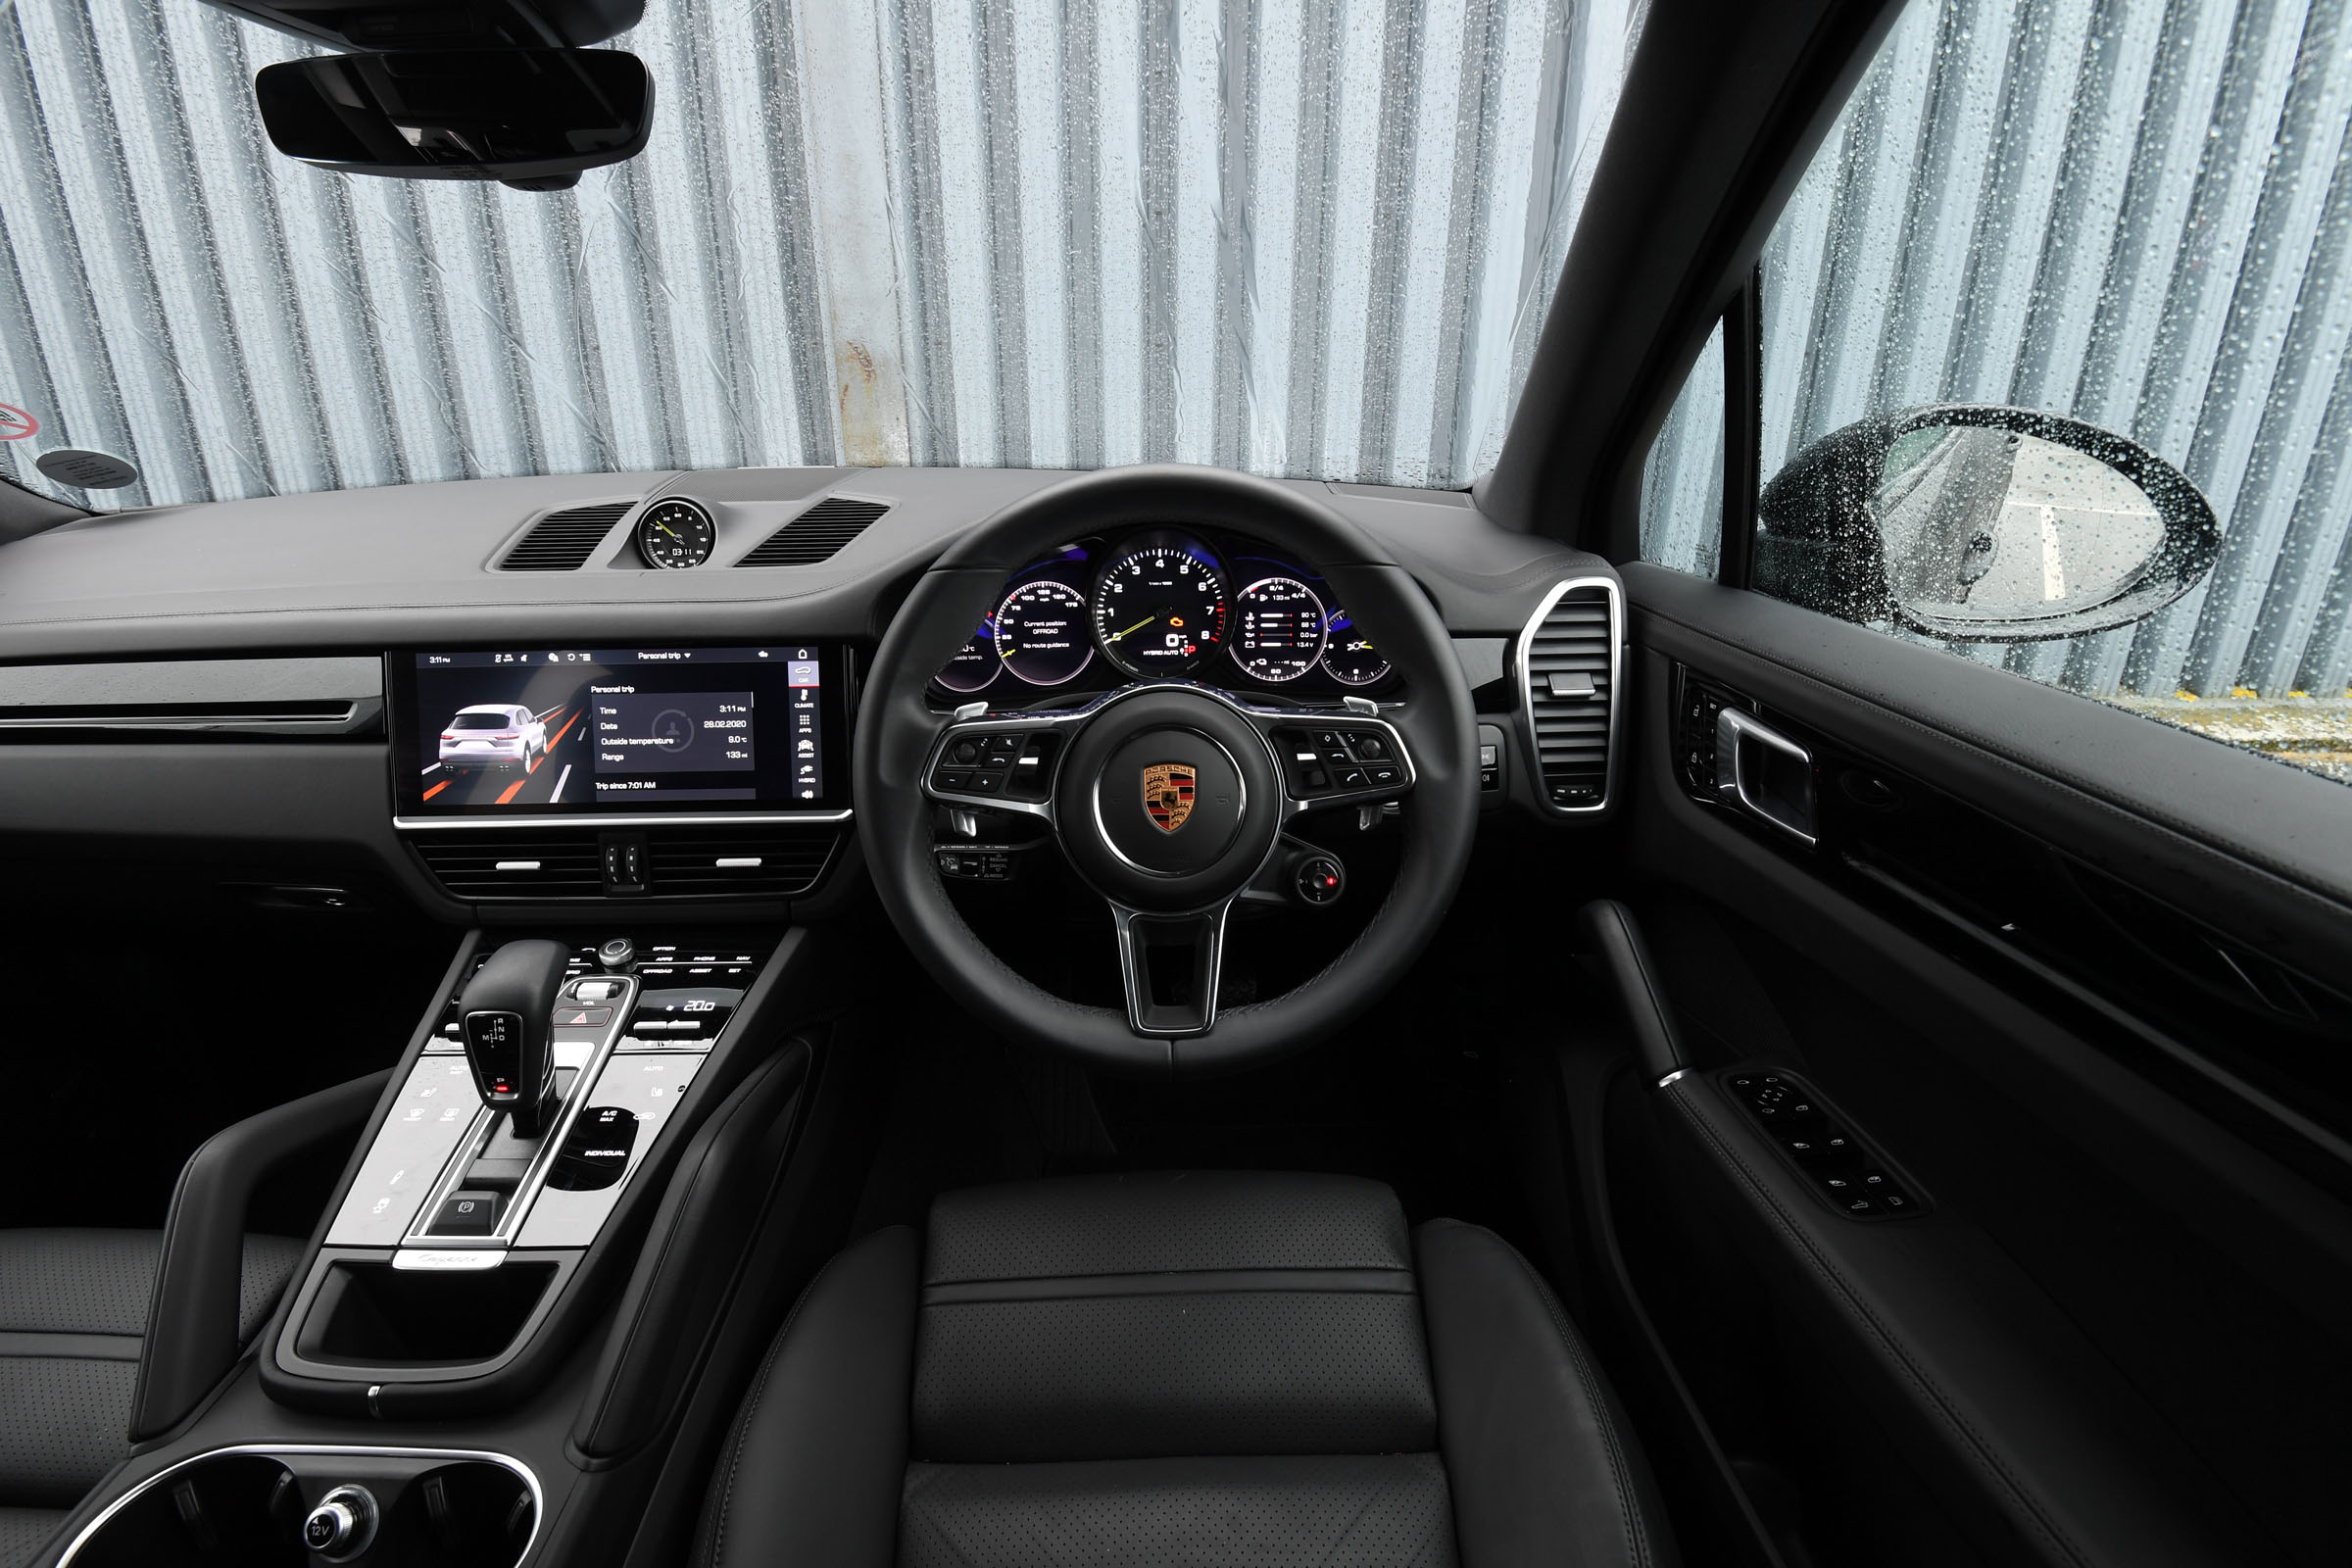 Porsche Cayenne hybrid interior & comfort | DrivingElectric